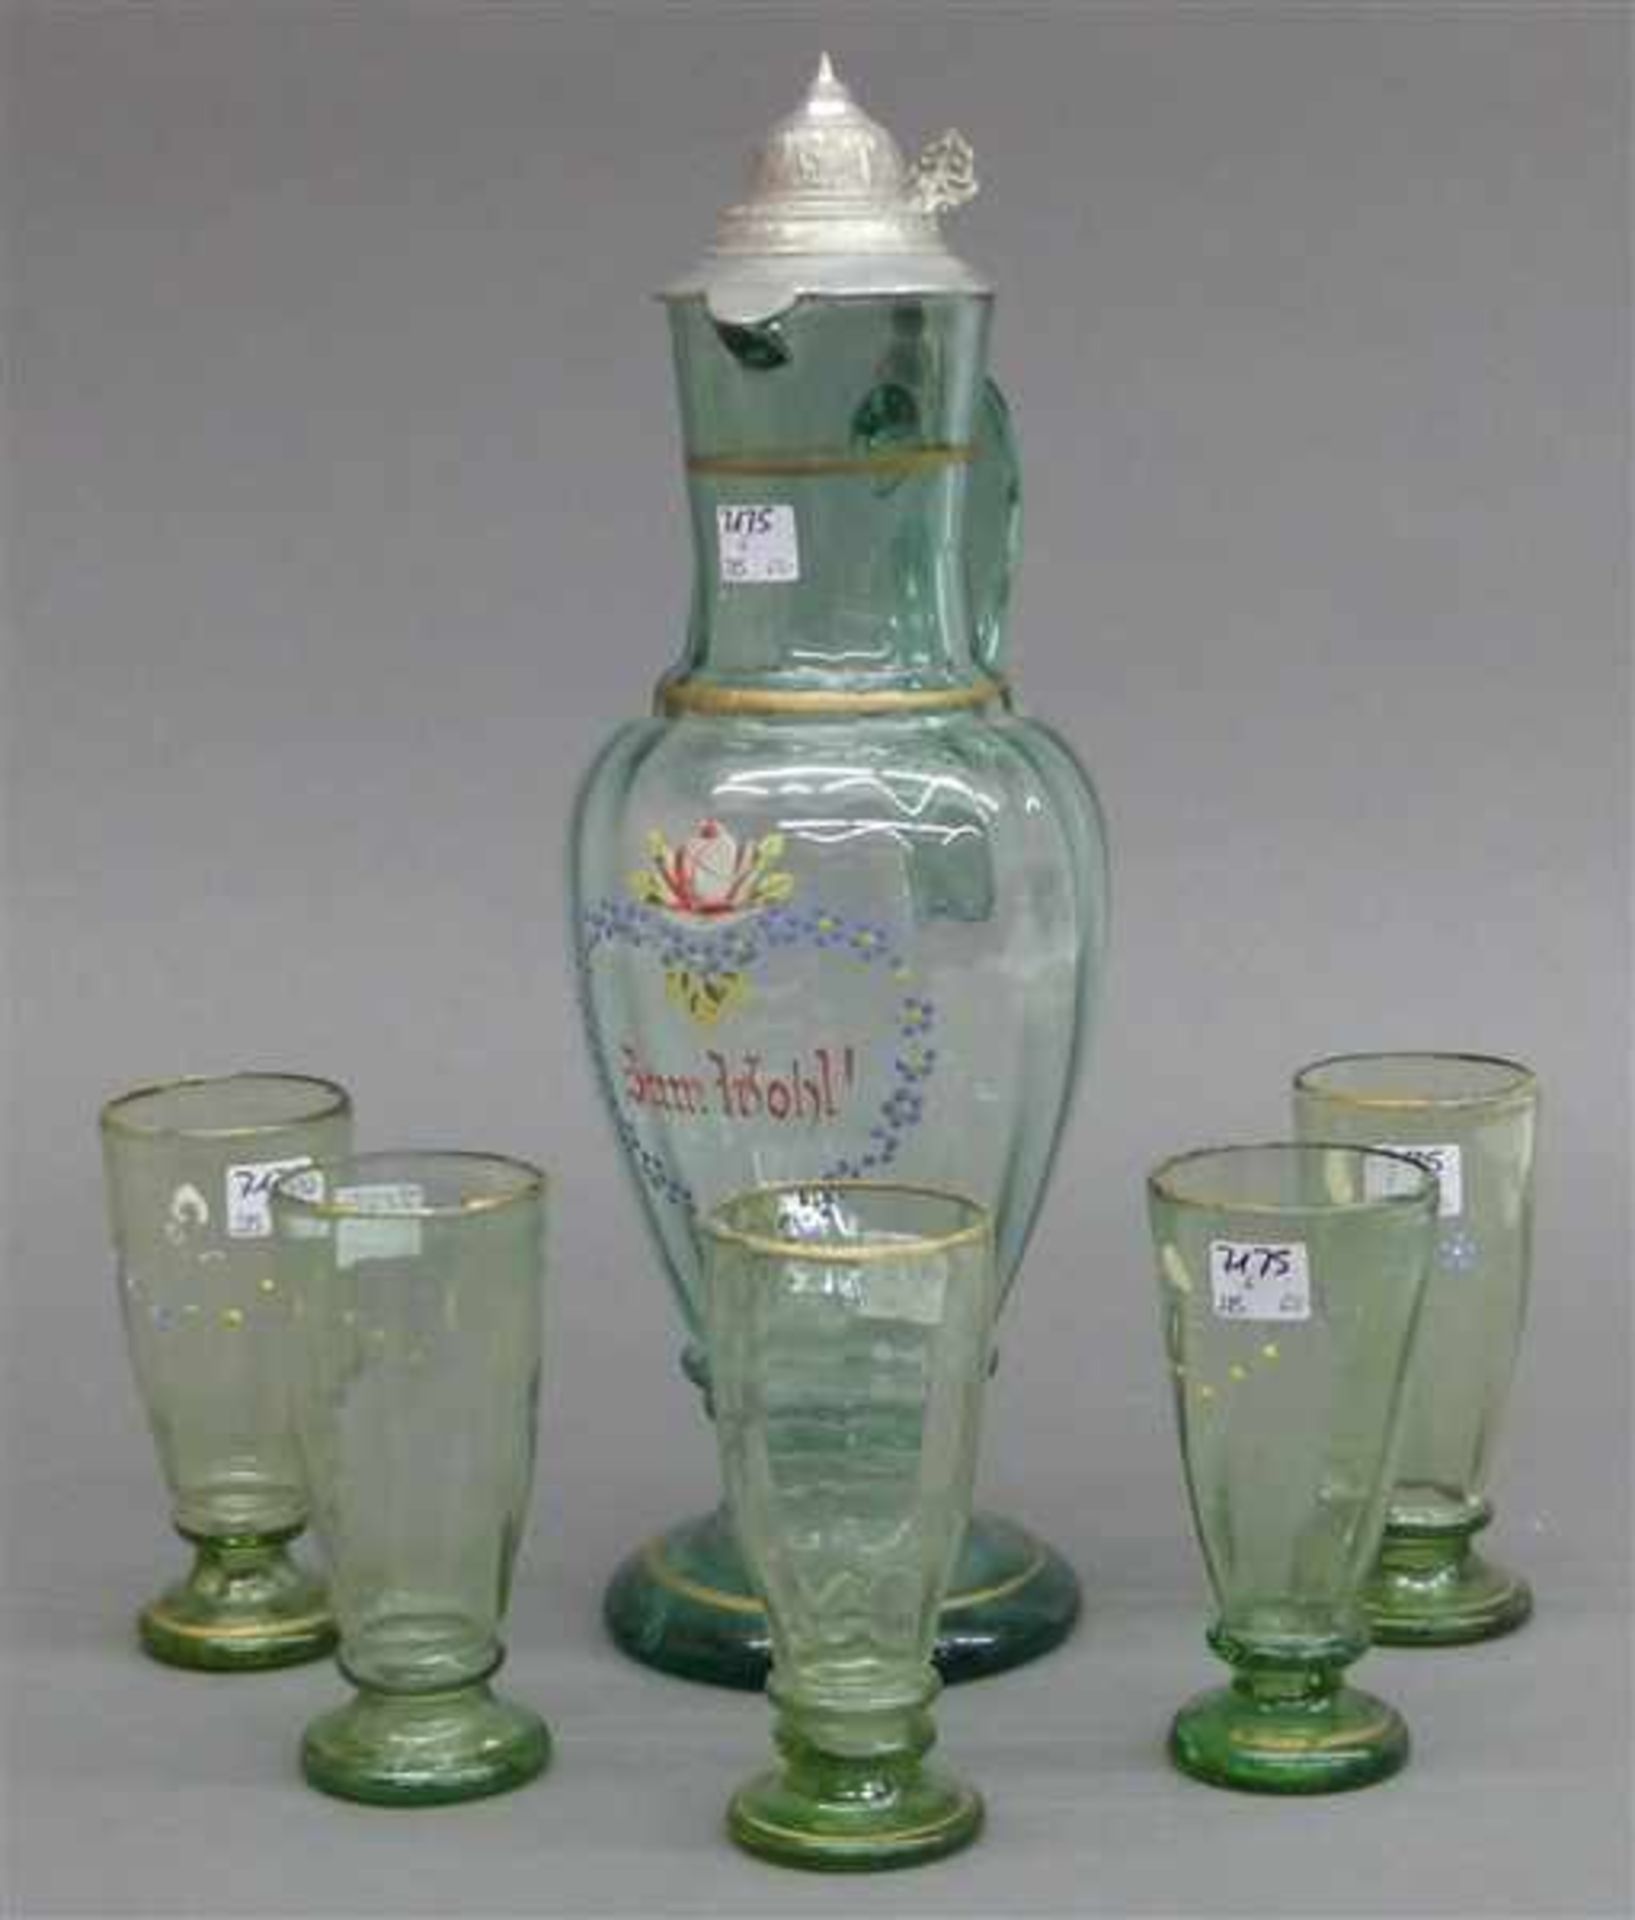 Saftkanne mit 5 Gläsernhellblau, um 1900, floraler Dekor, Schriftzug "zum Wohl", teilweise berieben,